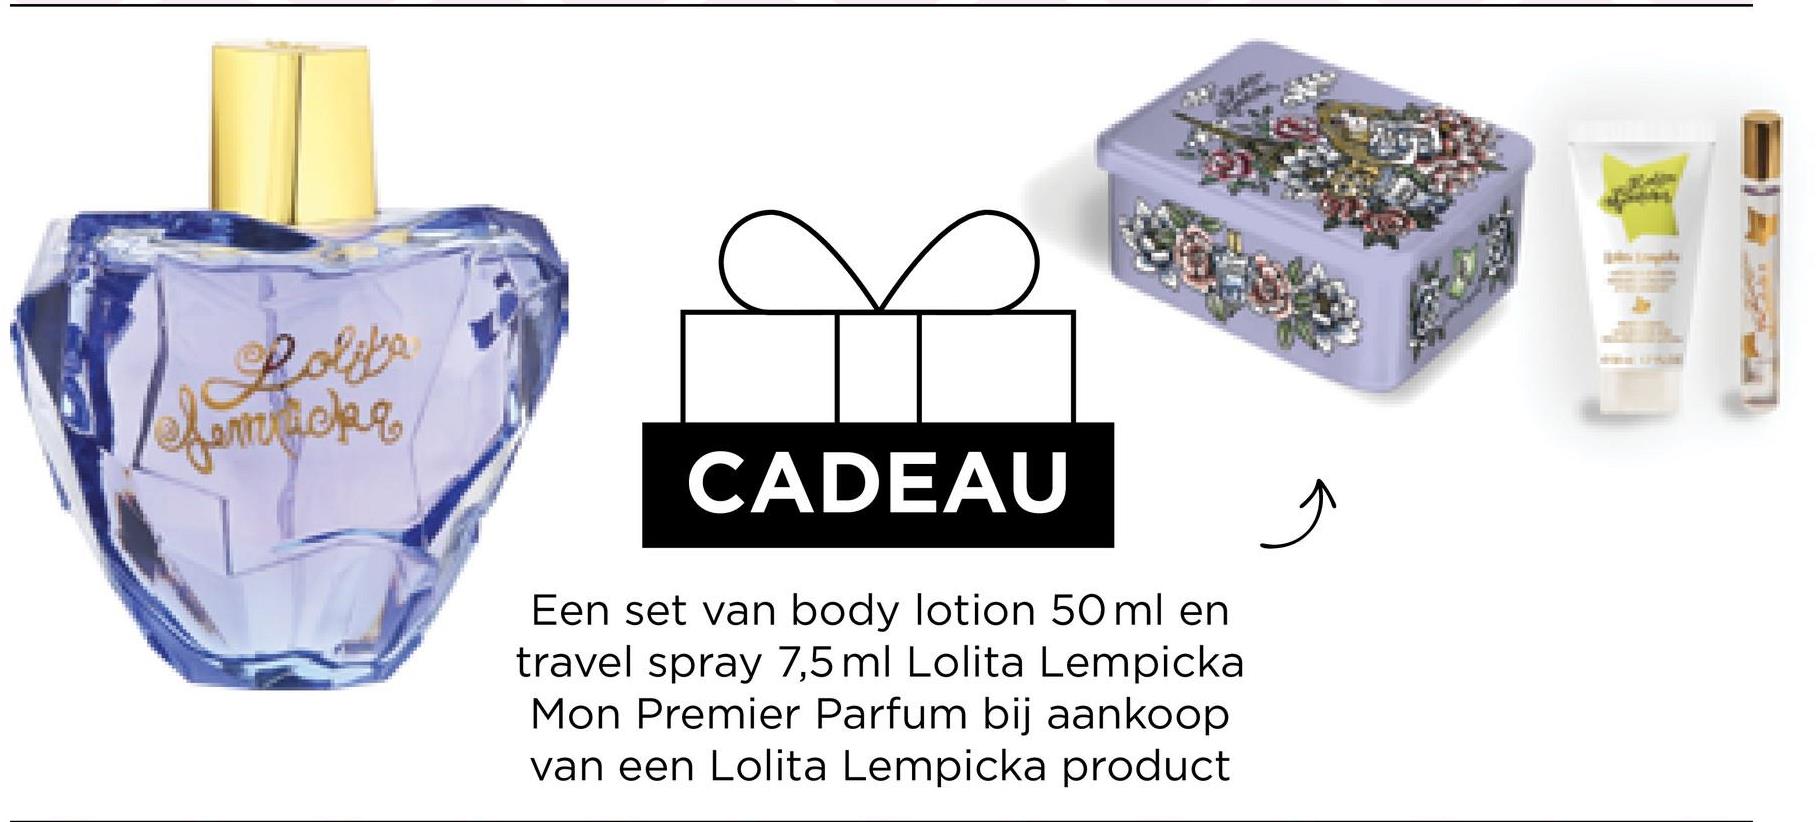 Lolita
femticke
CADEAU
Een set van body lotion 50 ml en
travel spray 7,5 ml Lolita Lempicka
Mon Premier Parfum bij aankoop
van een Lolita Lempicka product
Ĵ